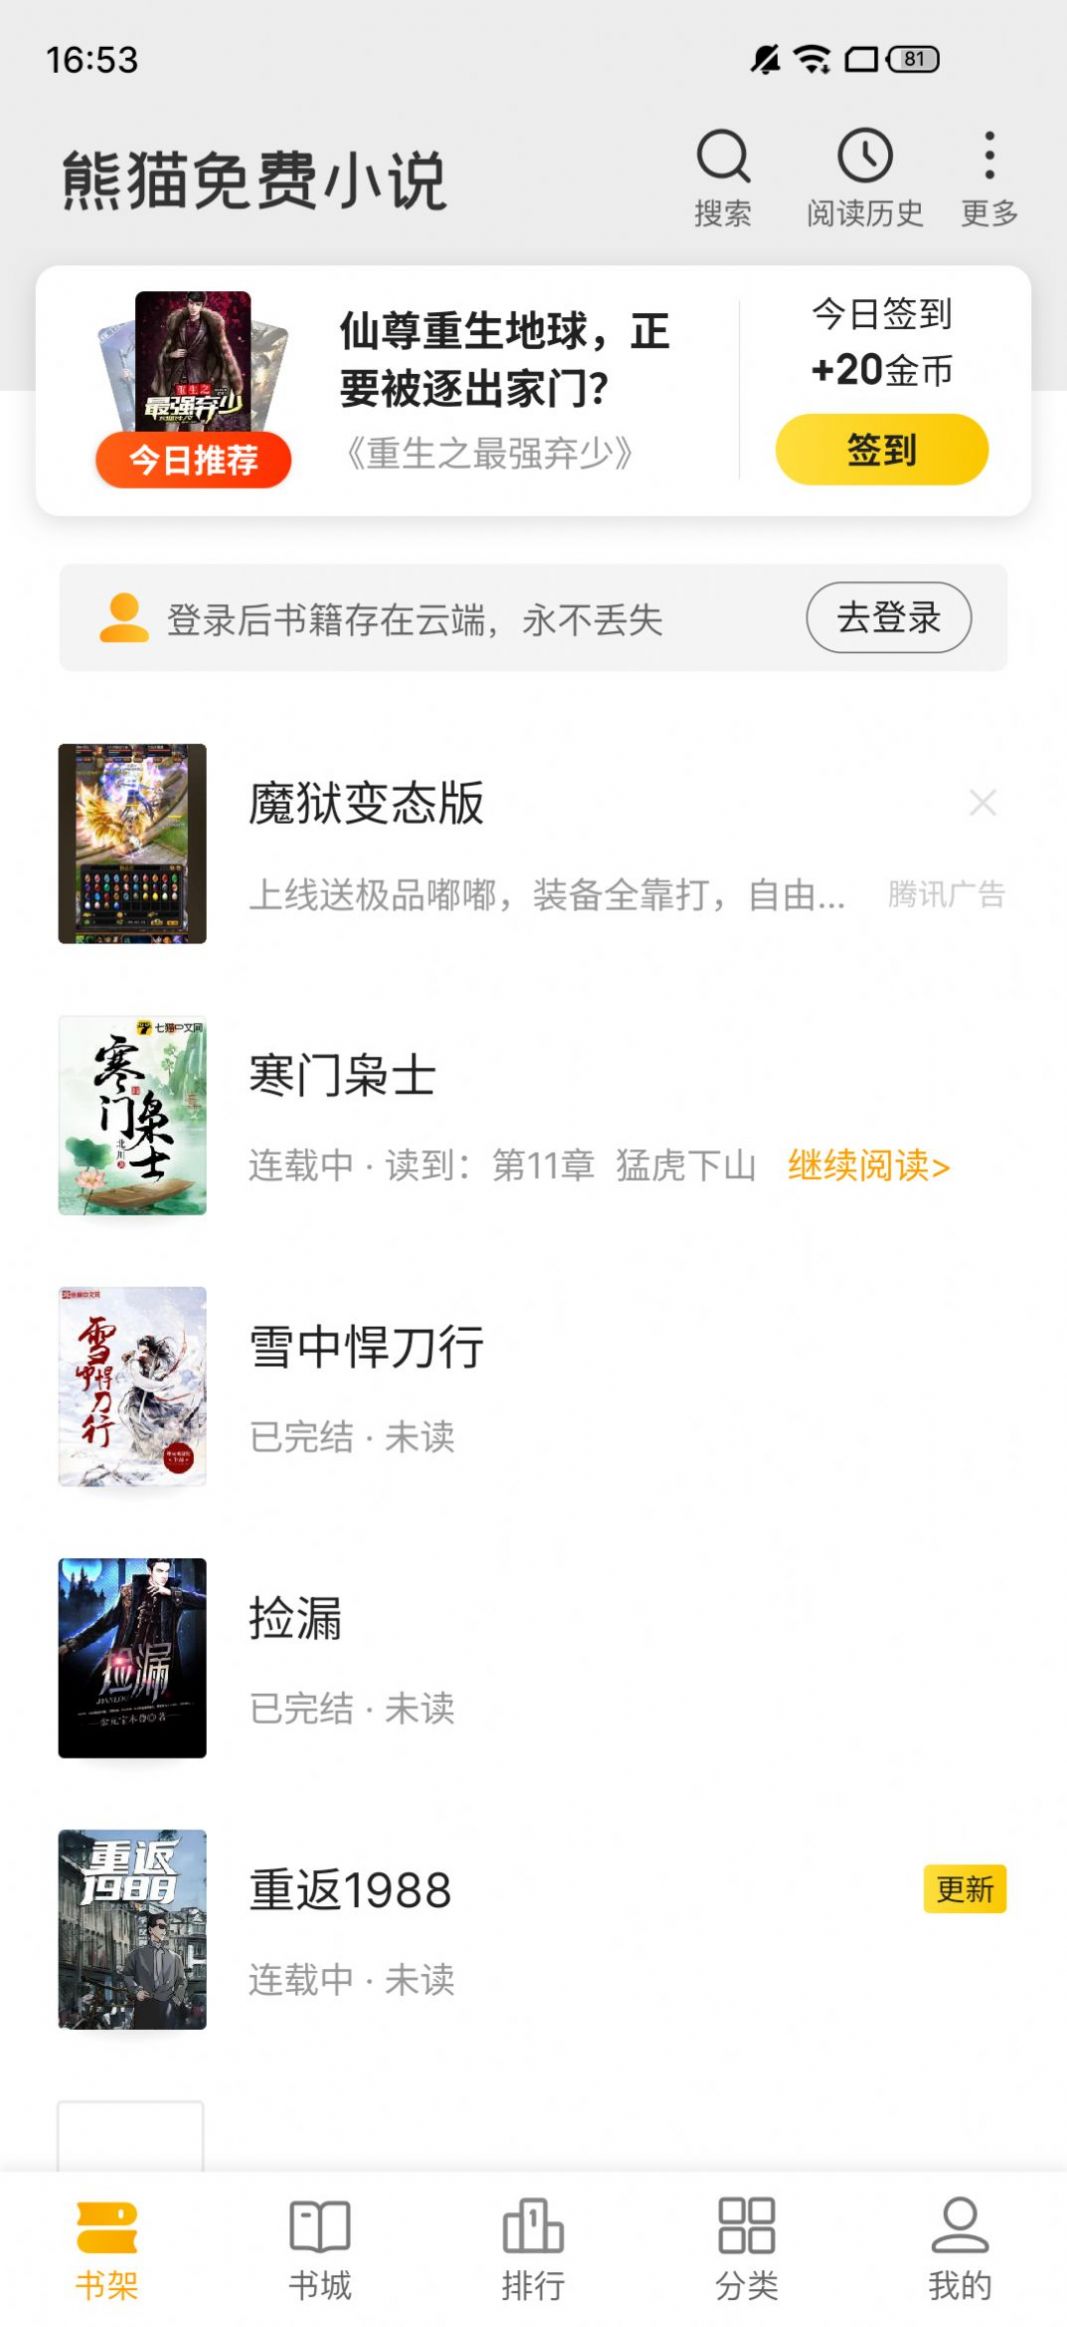 熊猫免费小说杭州app设计和开发